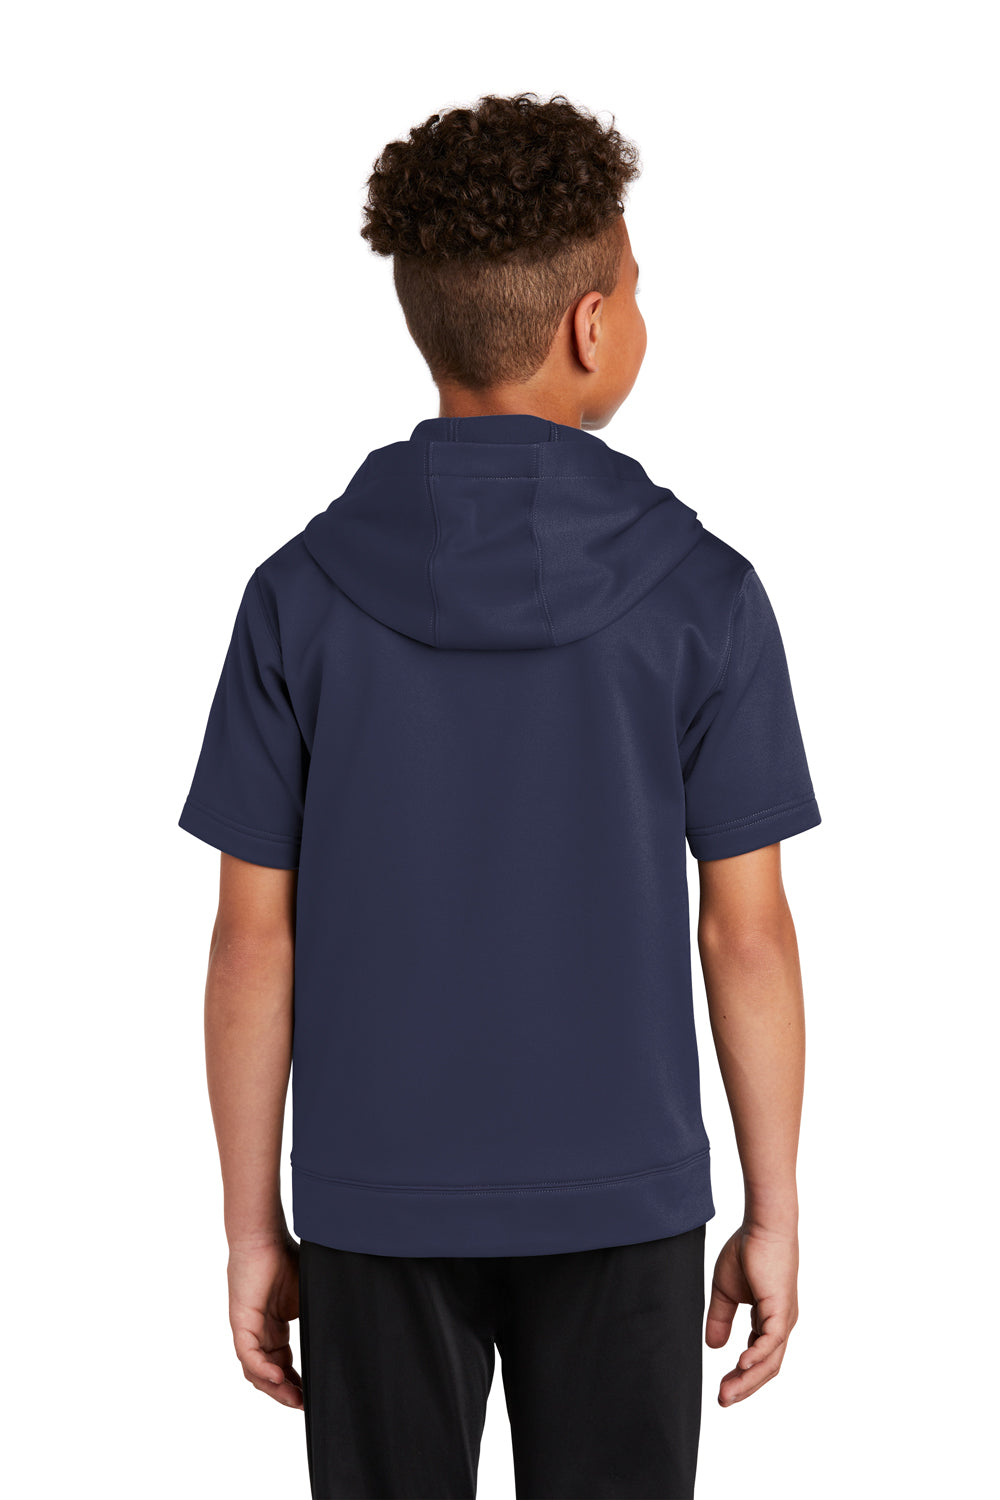 Sport-Tek Youth Fleece Short Sleeve Hooded Sweatshirt Hoodie Navy Blue Side